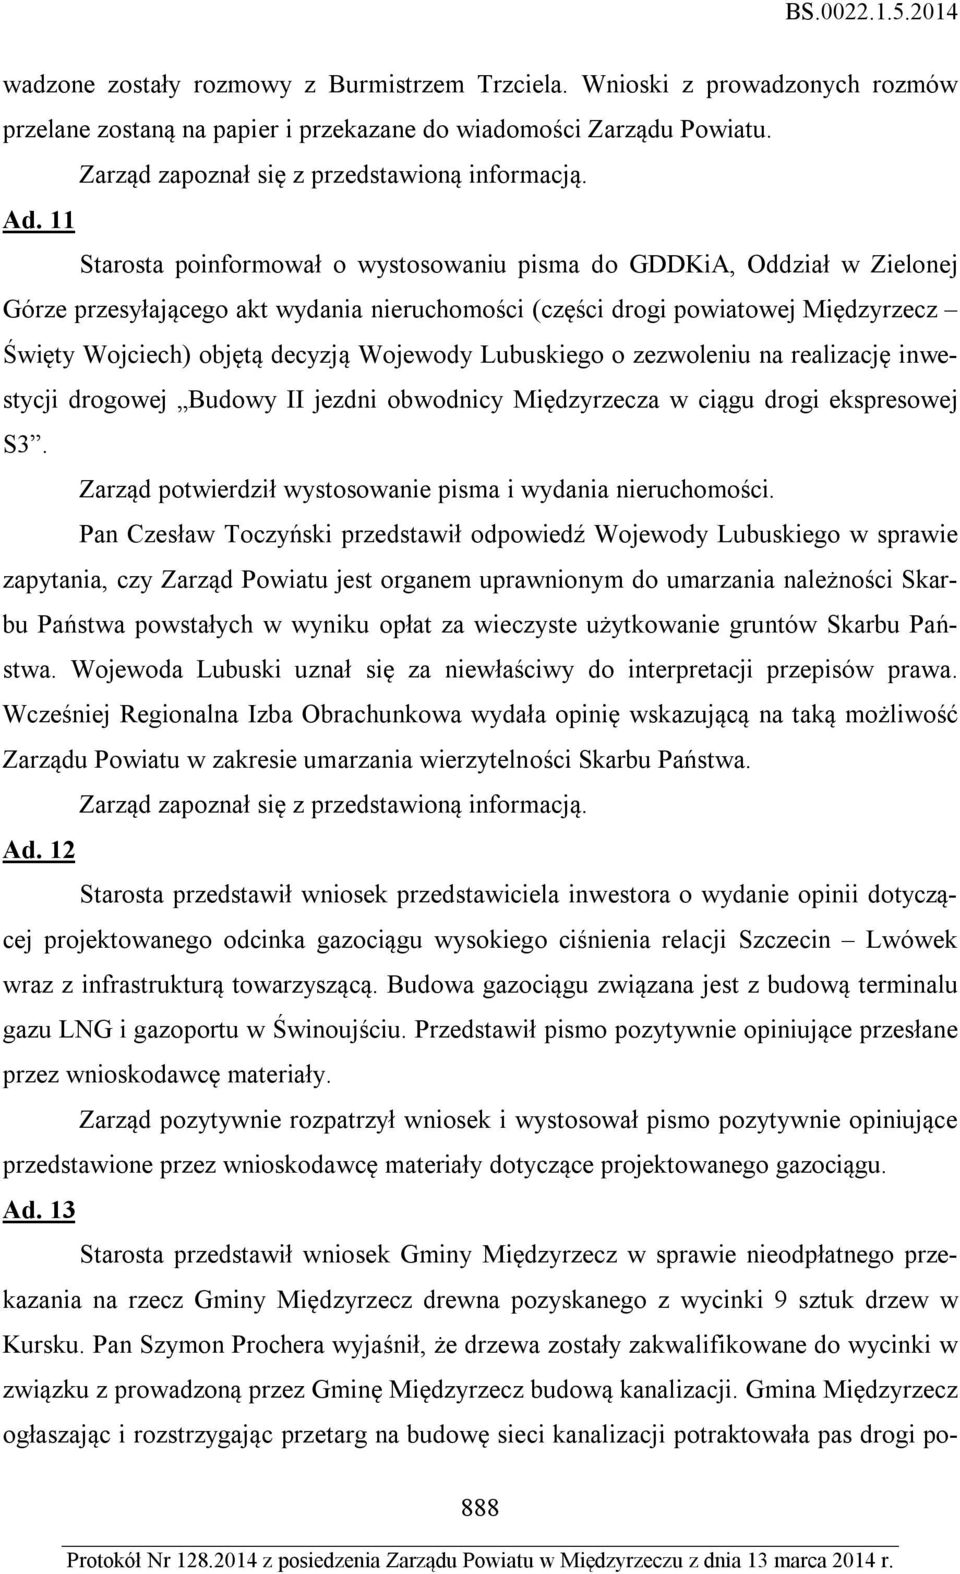 Wojewody Lubuskiego o zezwoleniu na realizację inwestycji drogowej Budowy II jezdni obwodnicy Międzyrzecza w ciągu drogi ekspresowej S3. Zarząd potwierdził wystosowanie pisma i wydania nieruchomości.